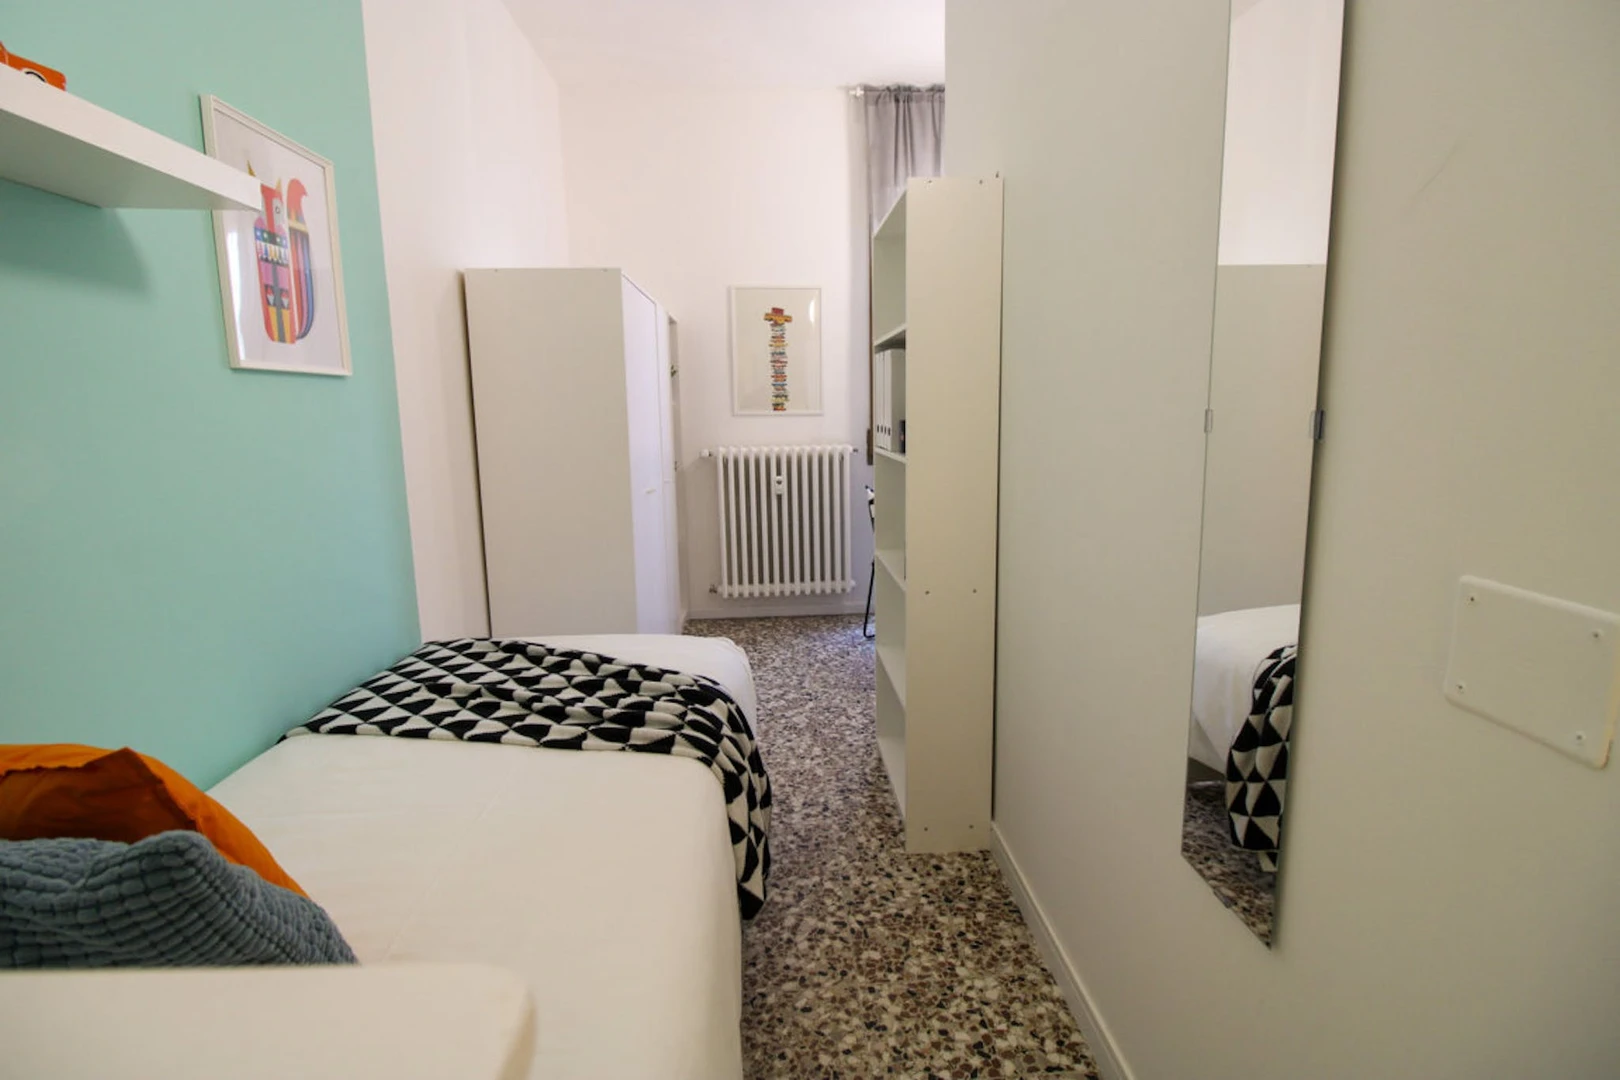 Alquiler de habitaciones por meses en Pavia